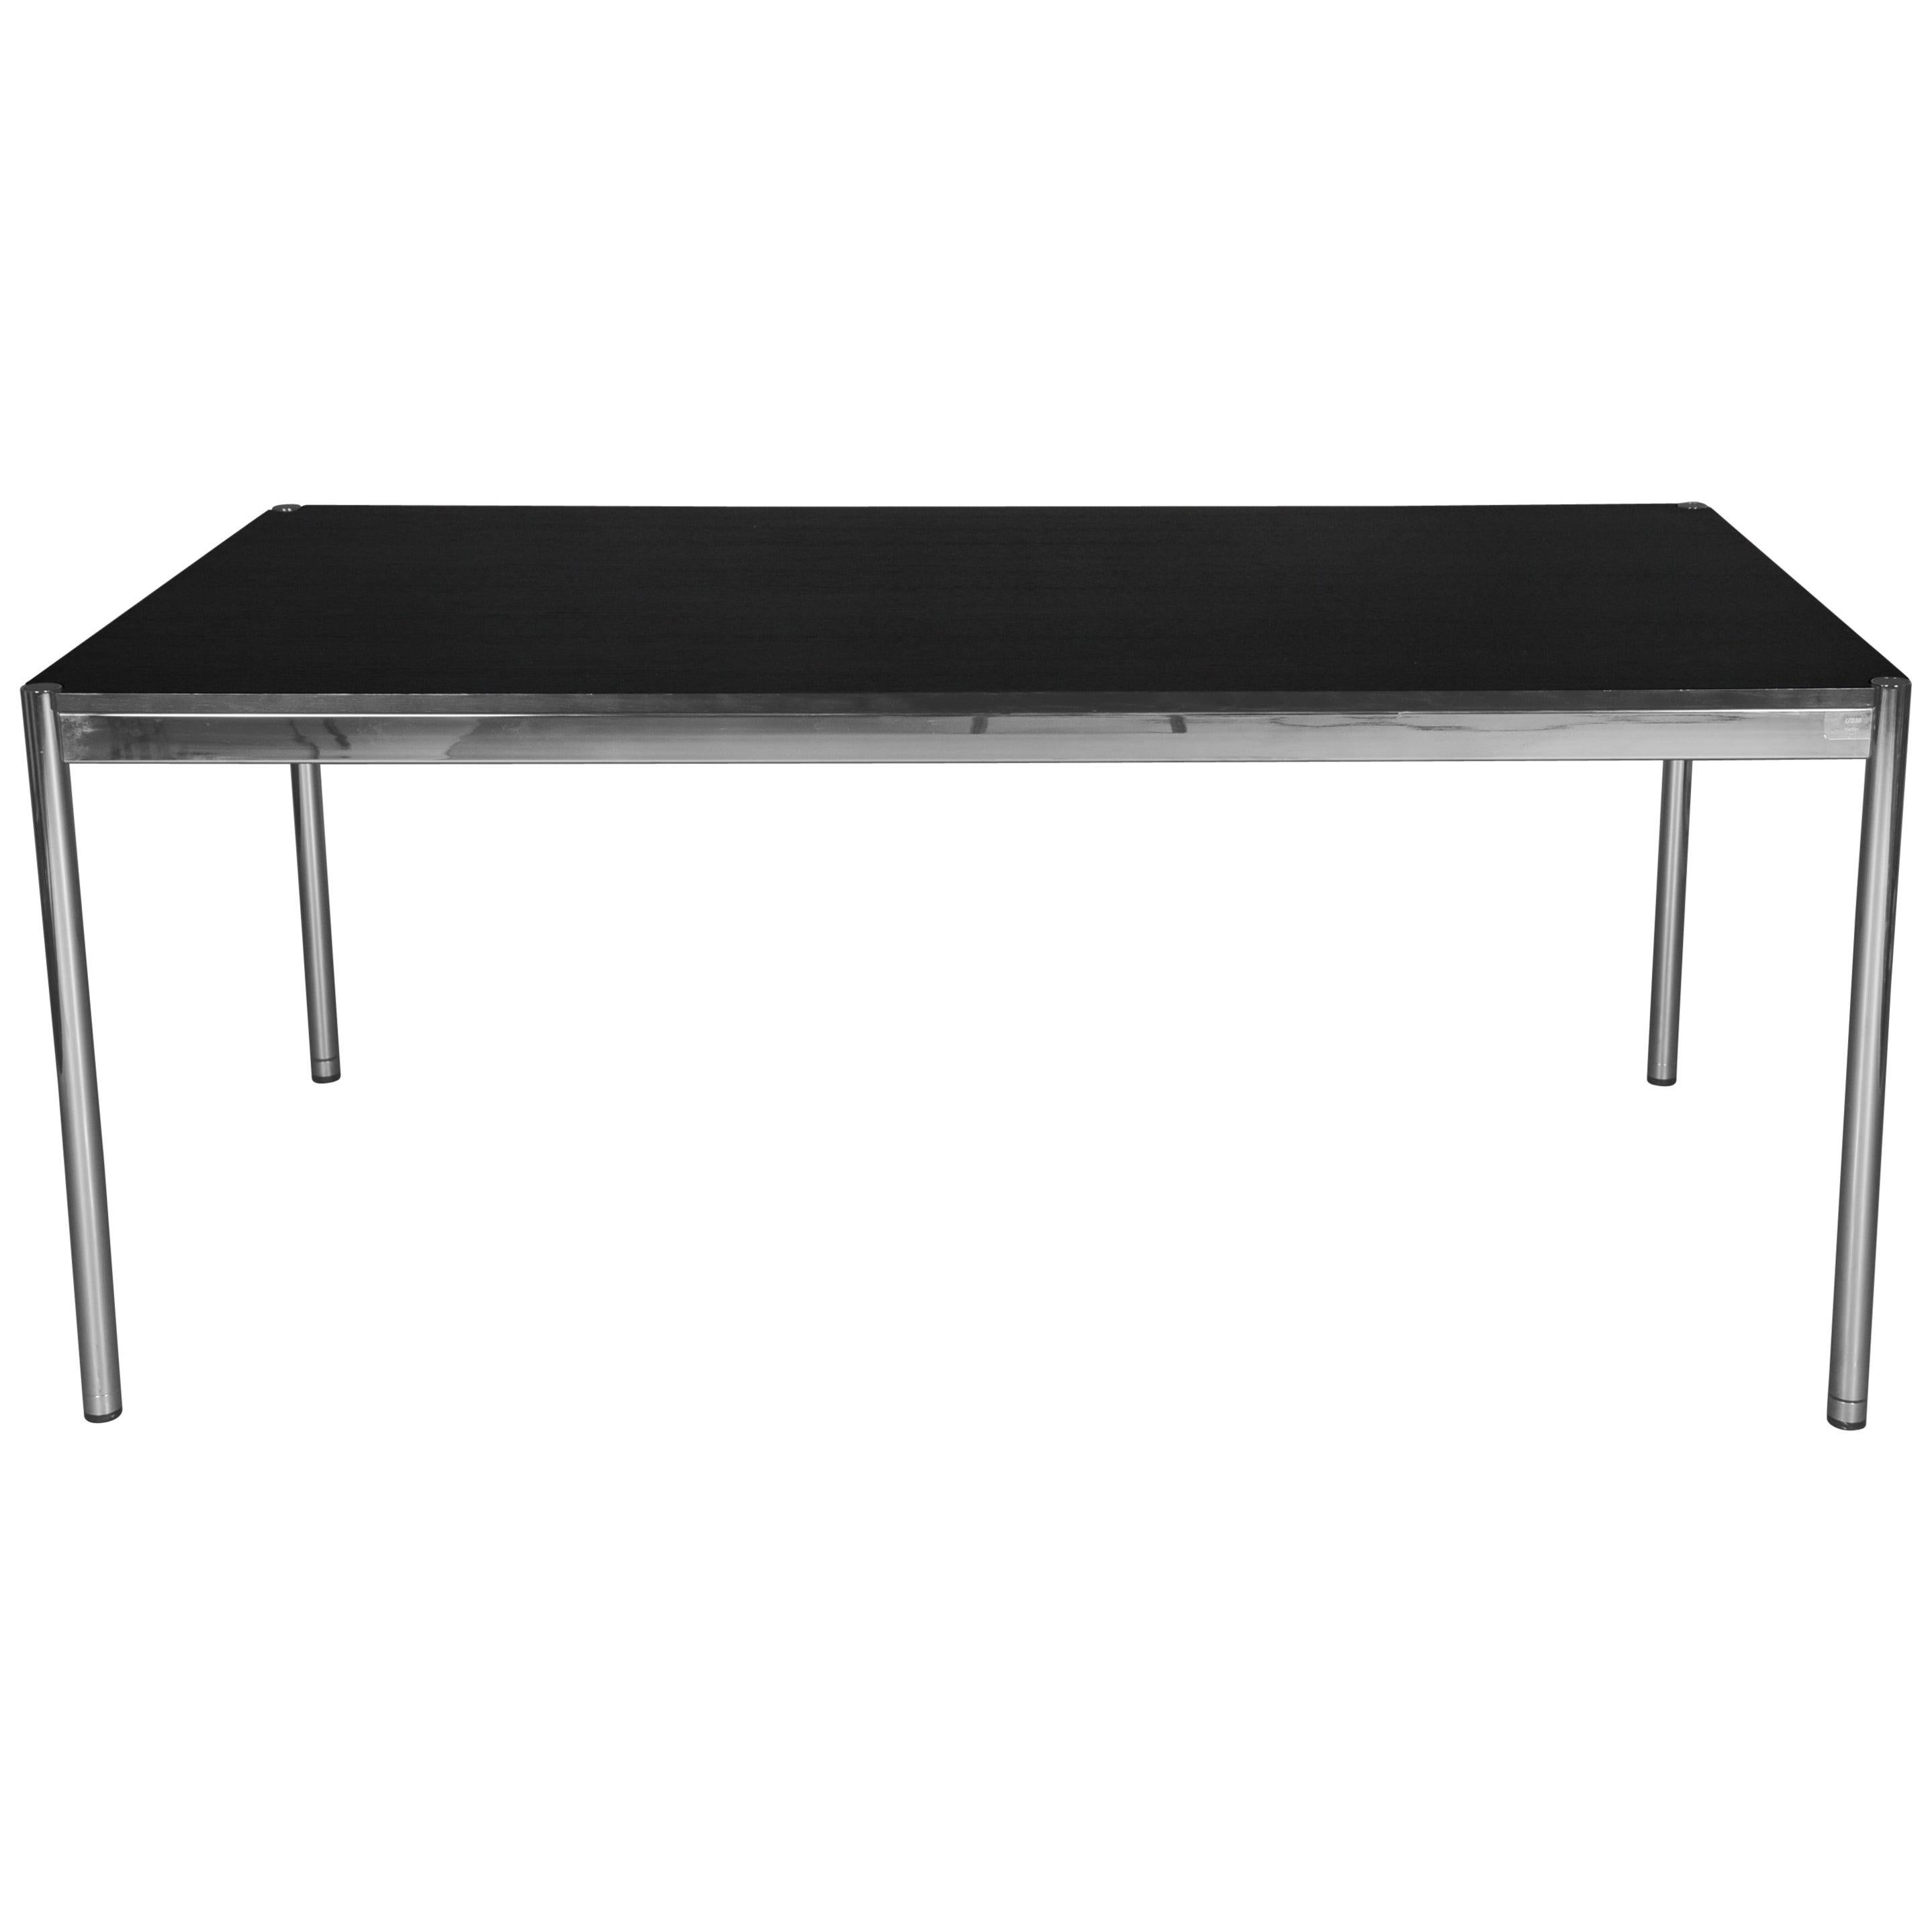 USM Haller Table, Wring Desk Solid Oak Black